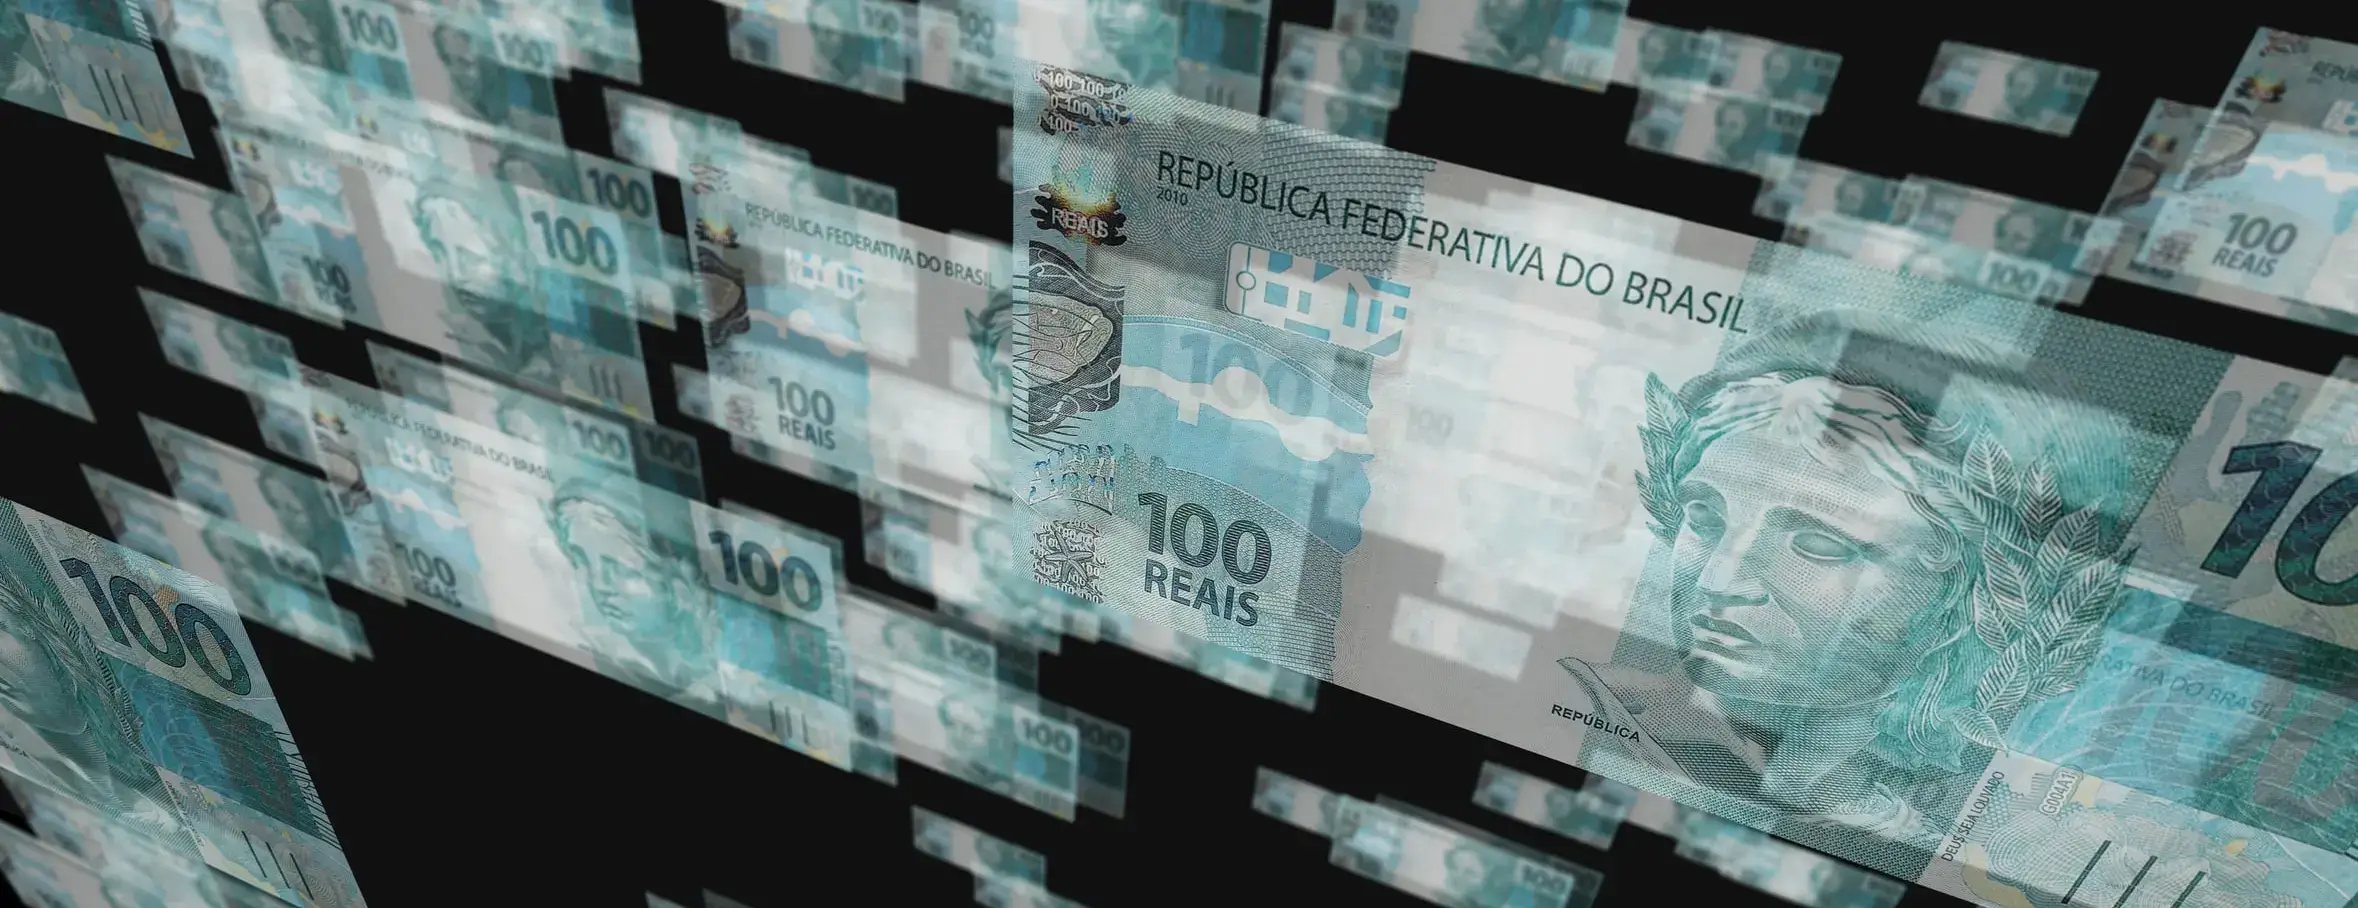 A imagem traz algumas notas de Real, moeda brasileira, 